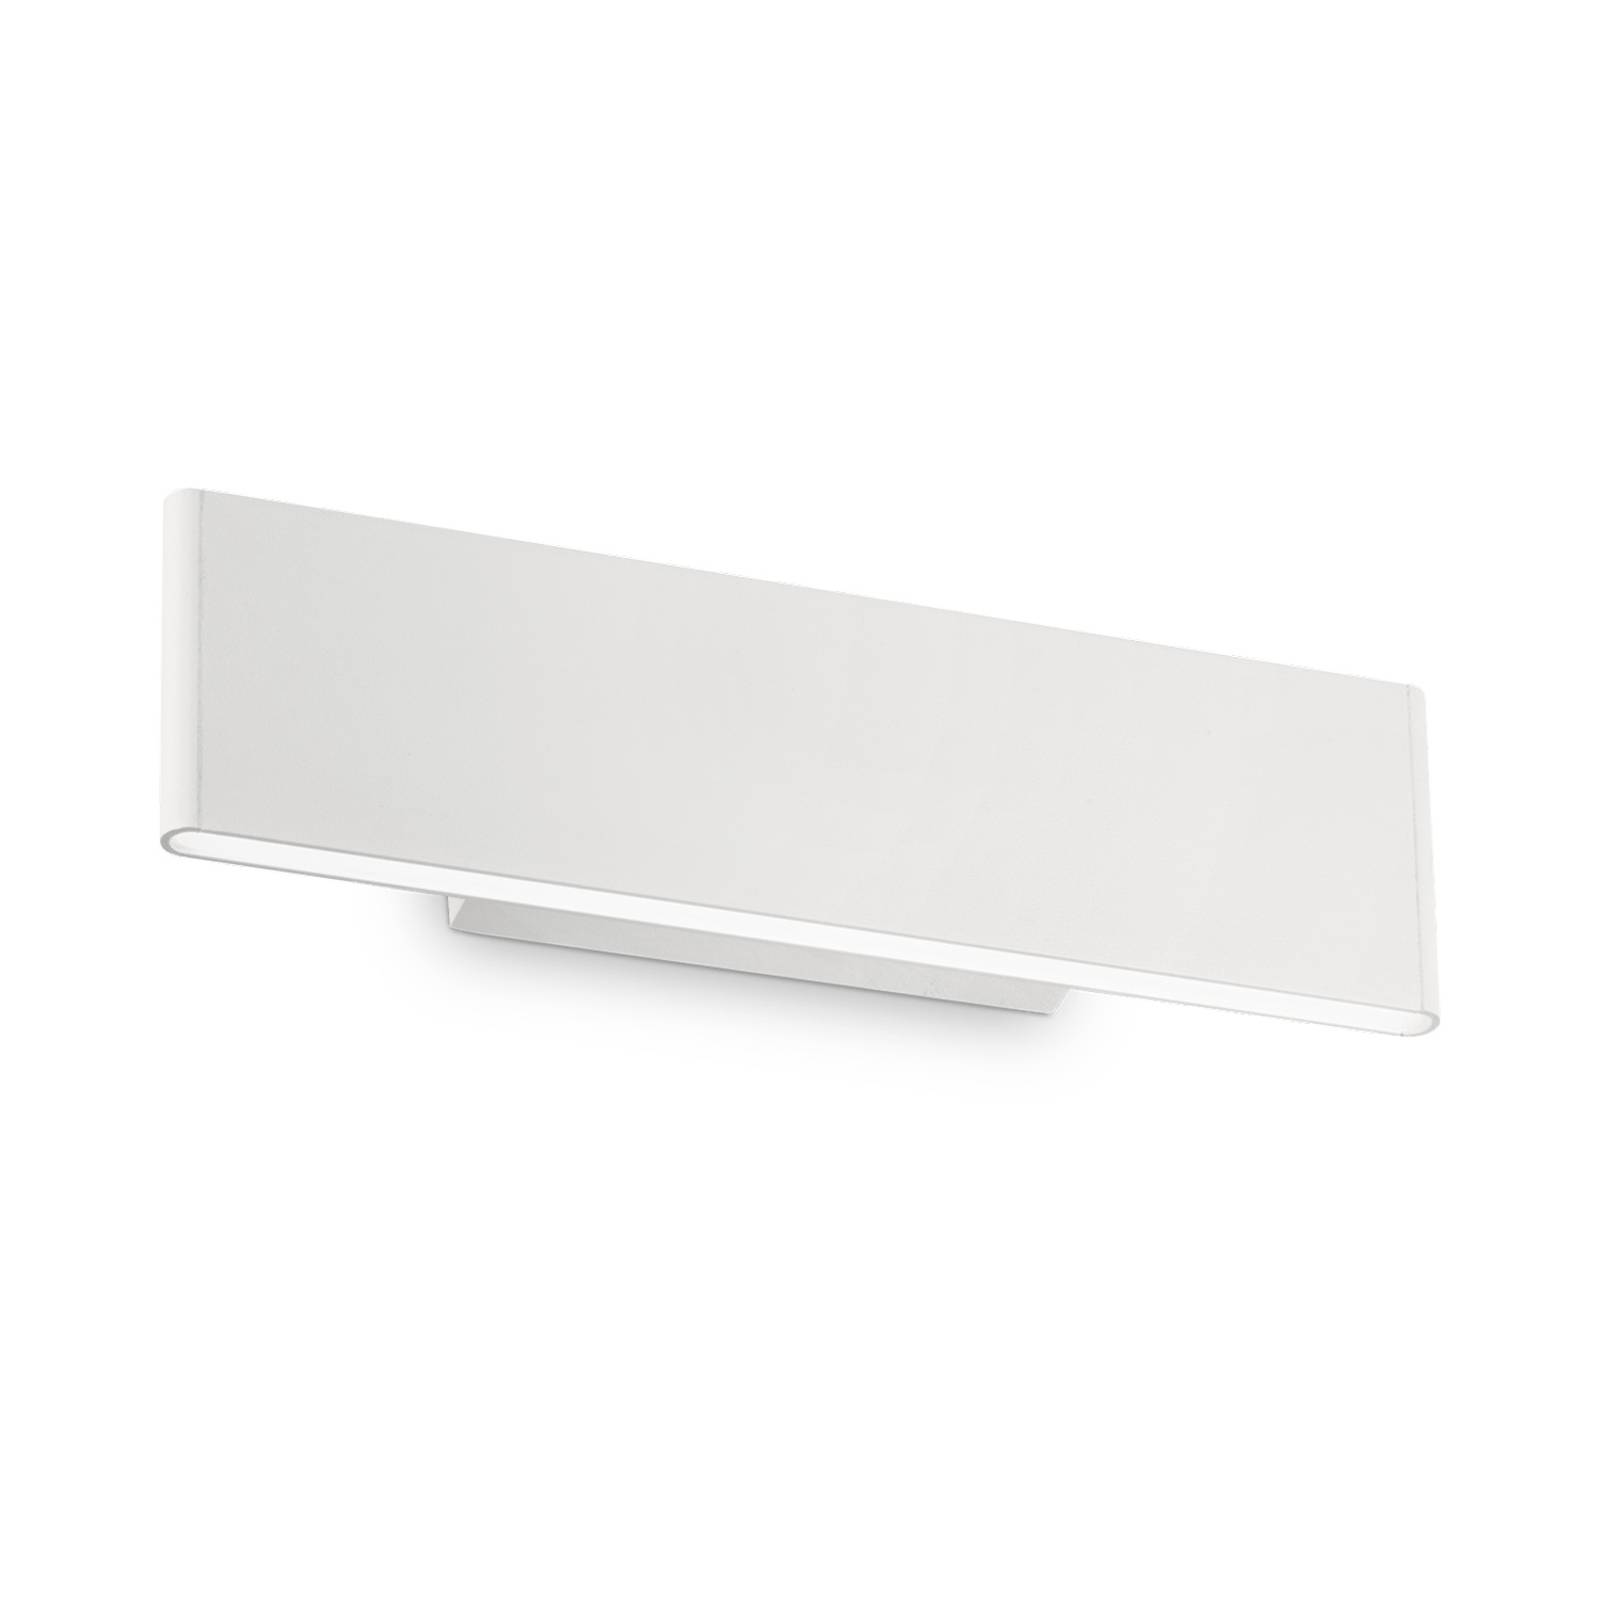 Ideallux LED-Wandleuchte Desk weiß, Licht oben / unten